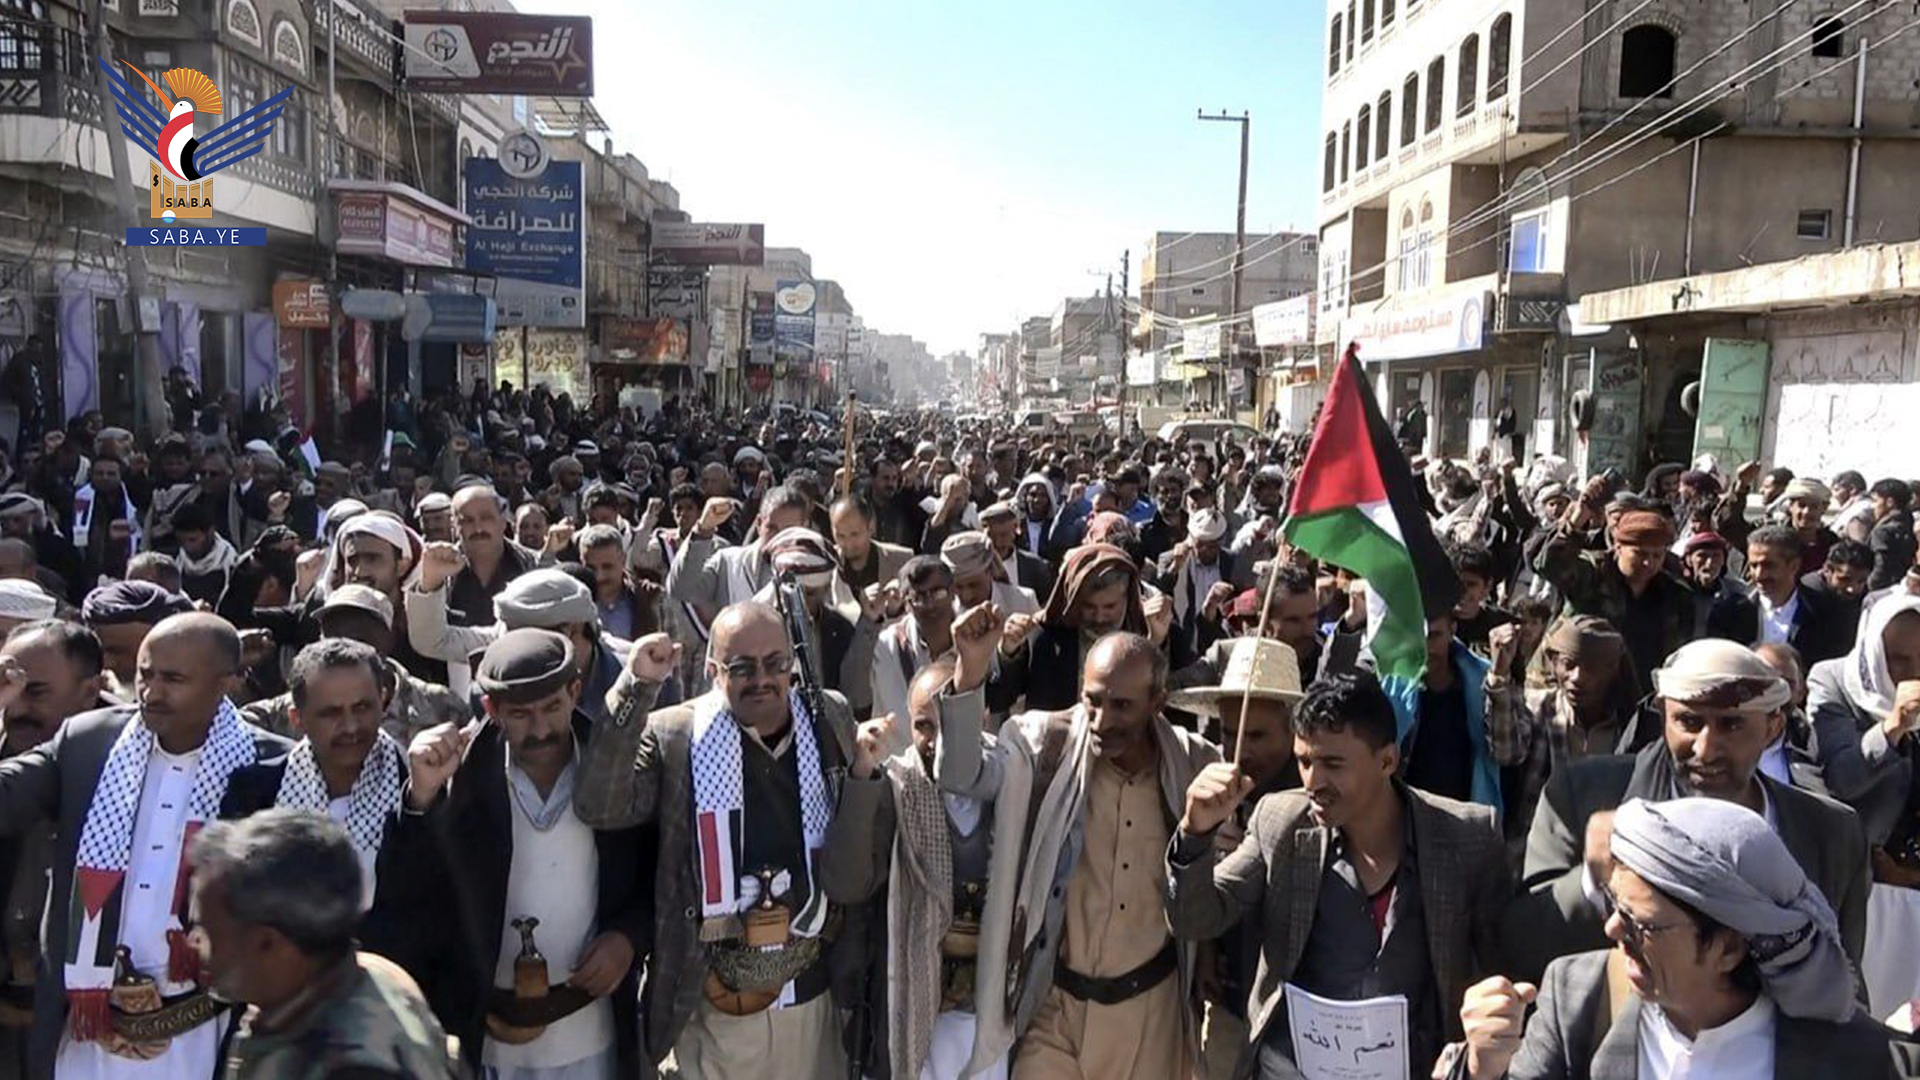 مسيرة حاشدة في مدينة يريم بإب تحت شعار “معكم حتى النصر والأمريكي لن يوقفنا”